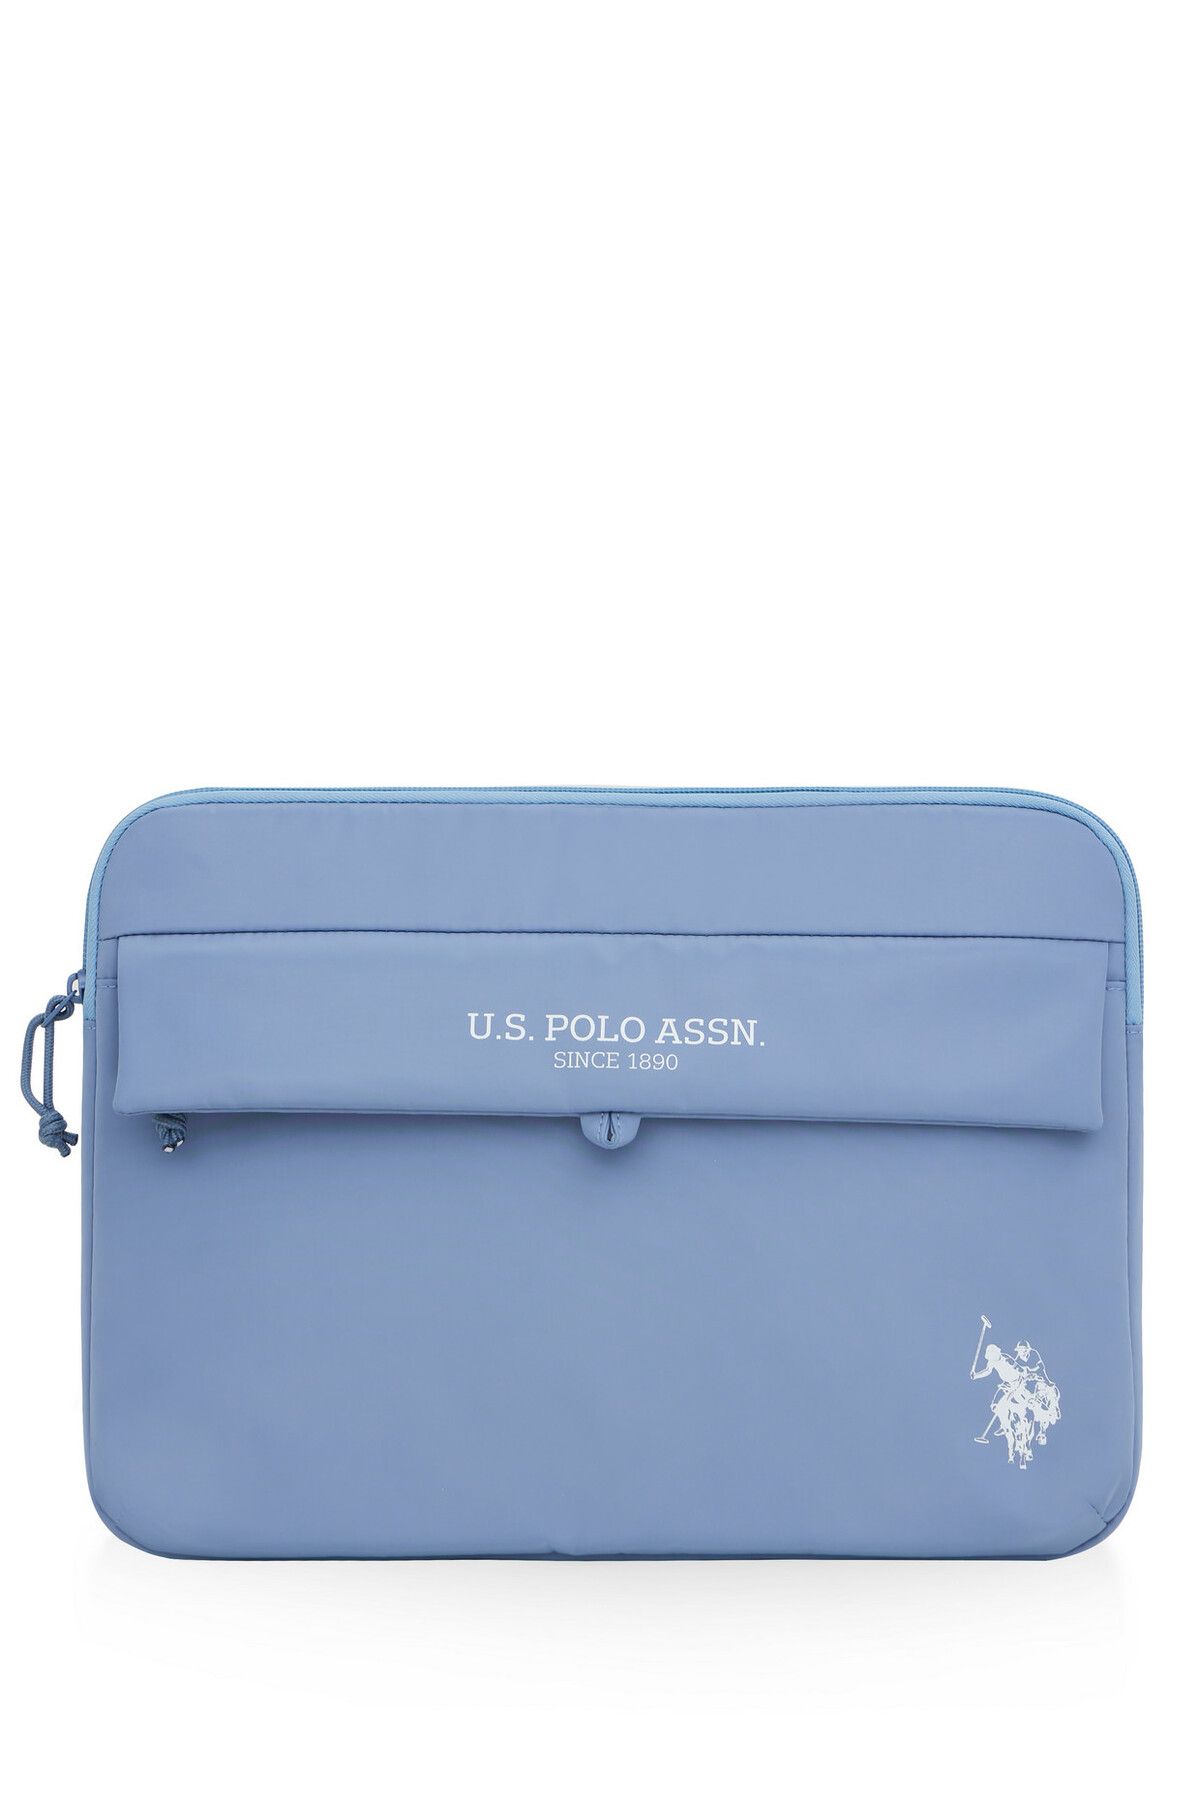 U.S. Polo Assn. U.S. Polo Assn. 23683 Unisex Laptop Bölmeli Evrak Çantası AÇIK MAVİ